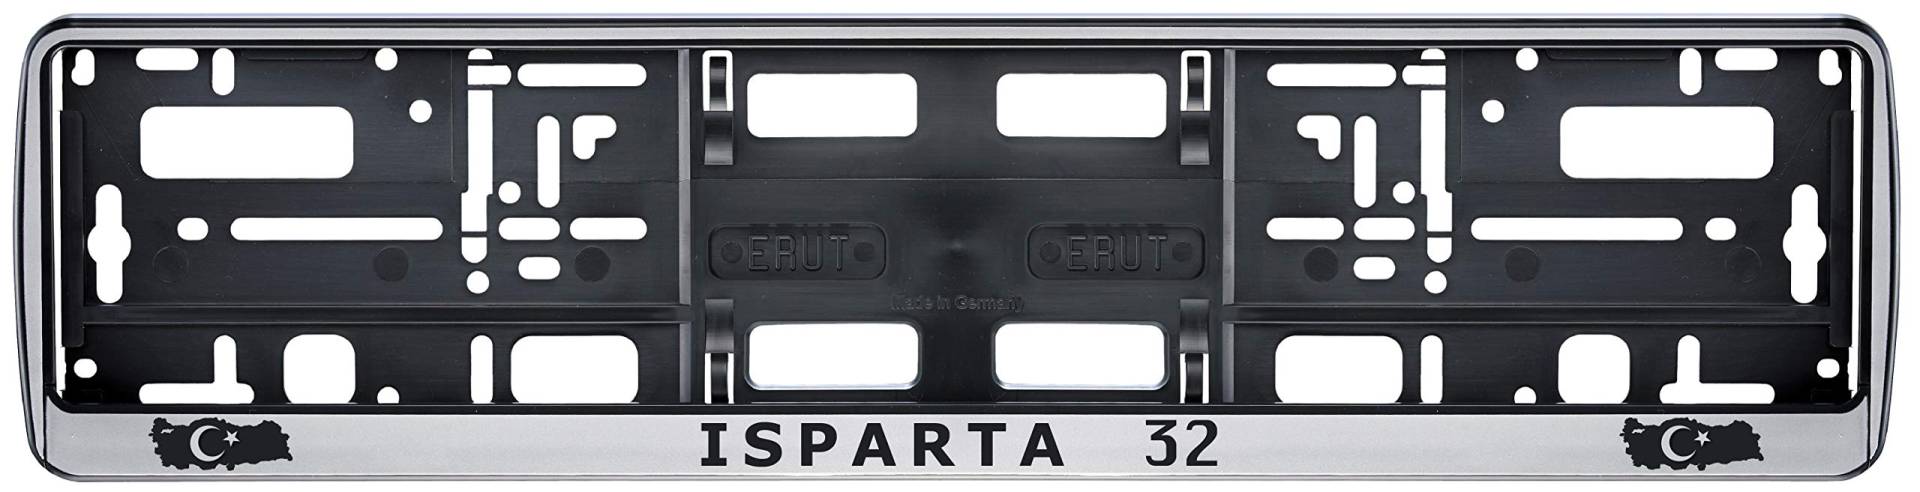 Auto Kennzeichenhalter in der Farbe Silber/Schwarz Nummernschildhalterung Auto, Nummernschildhalter Türkei Flagge 32 Isparta 2 Stück von aina